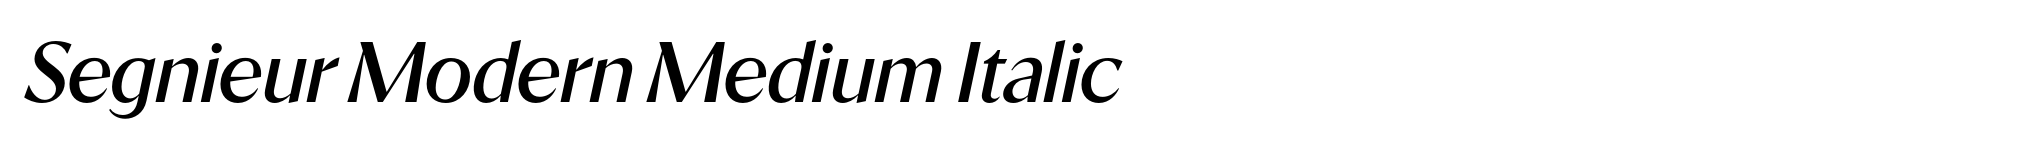 Segnieur Modern Medium Italic image